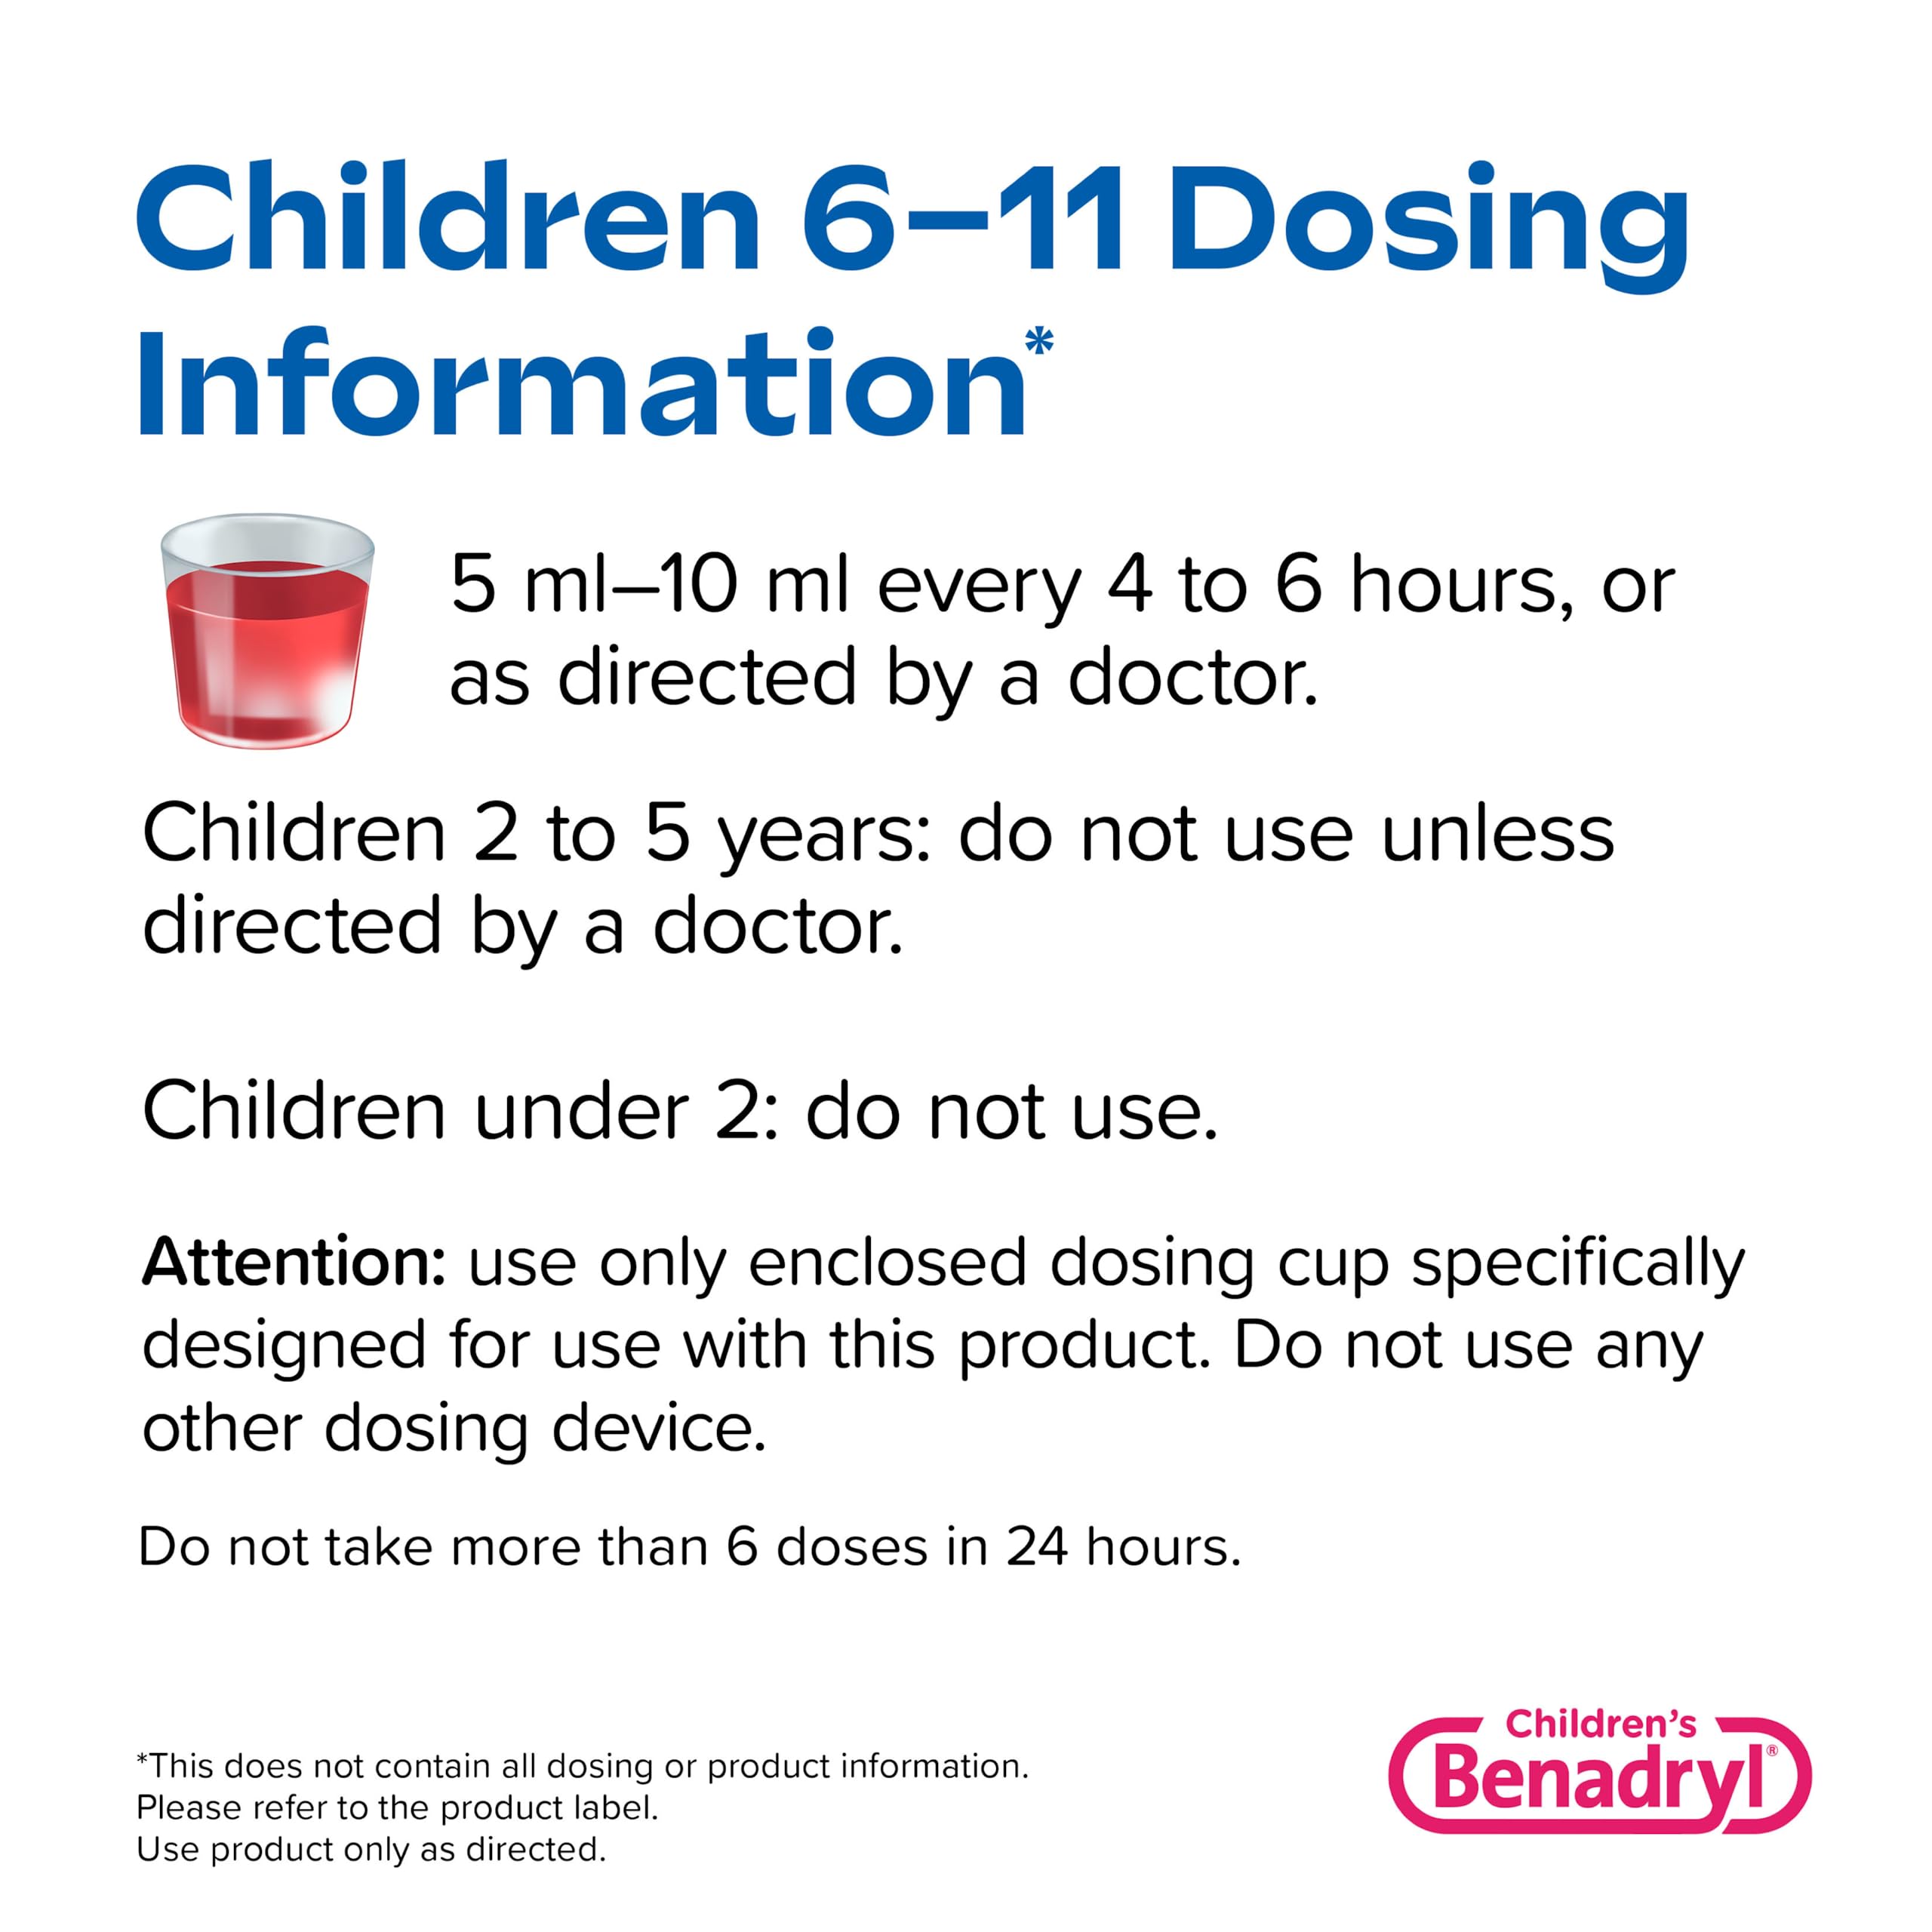 Benadryl Children's Allergy Relief Liquid Medicine with Diphenhydramine HCl Antihistamine for Kids' Allergy Relief, Effective Allergy Relief, Cherry Flavor, 8 fl. oz